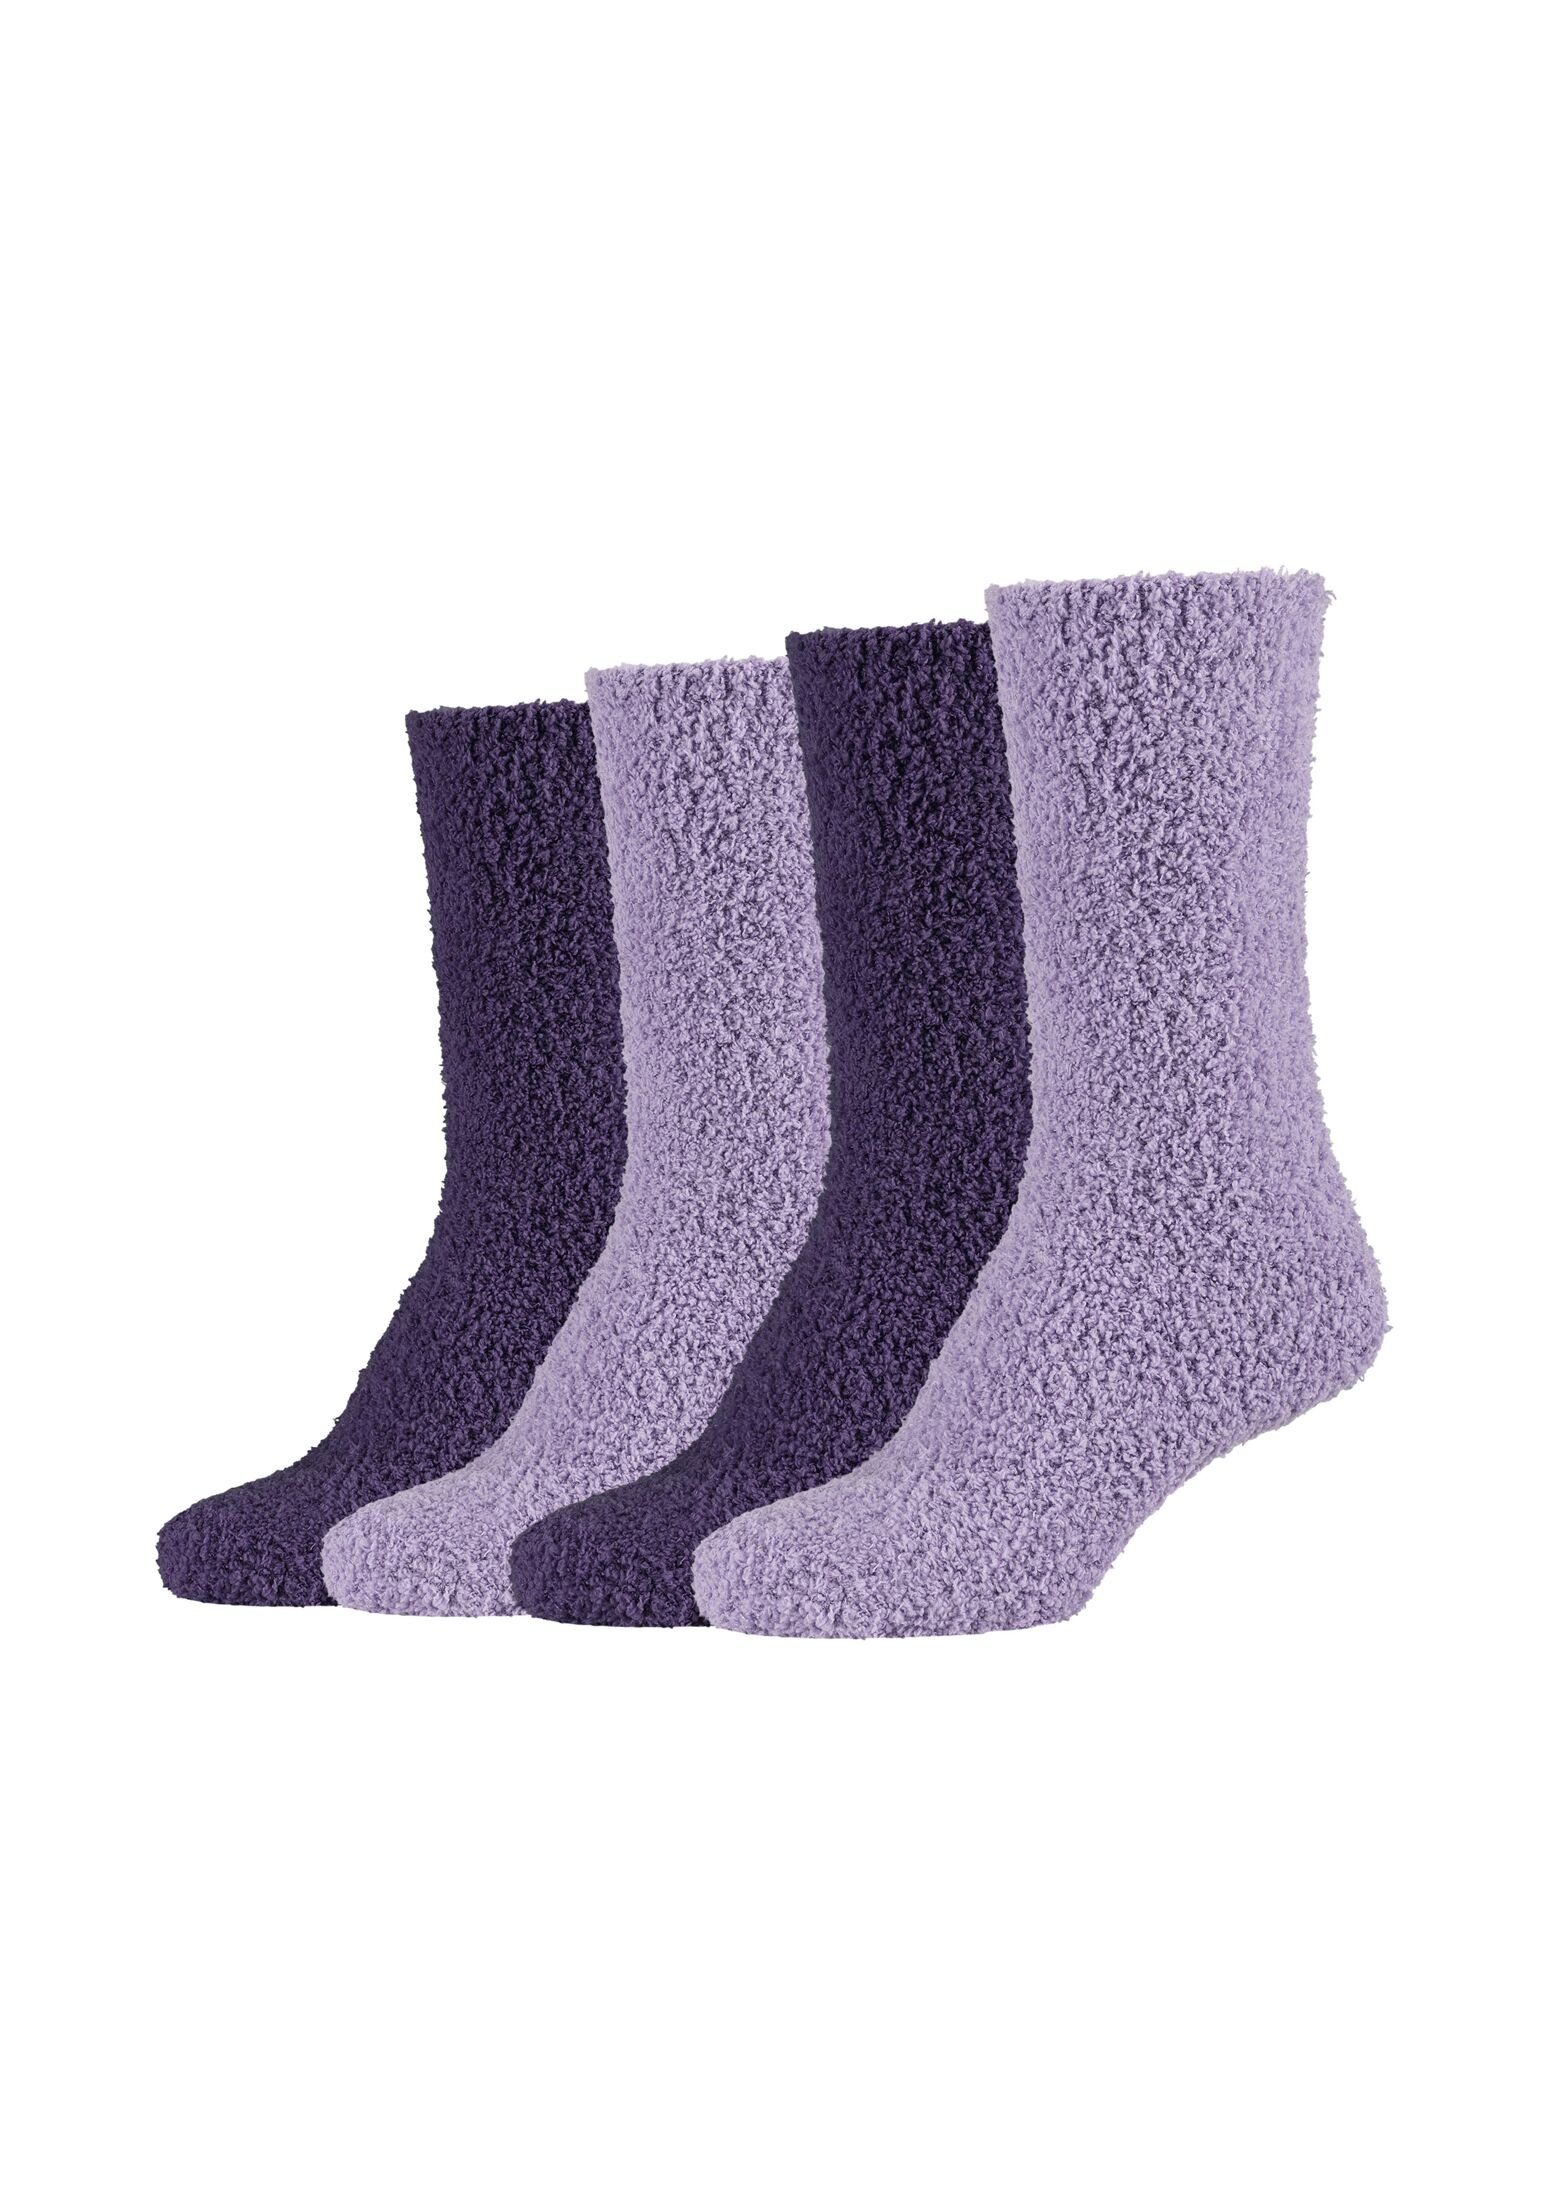 Lang Cosy mulberry purple Camano Kuschelsocken Flauschig Damen Socken Warm Socken